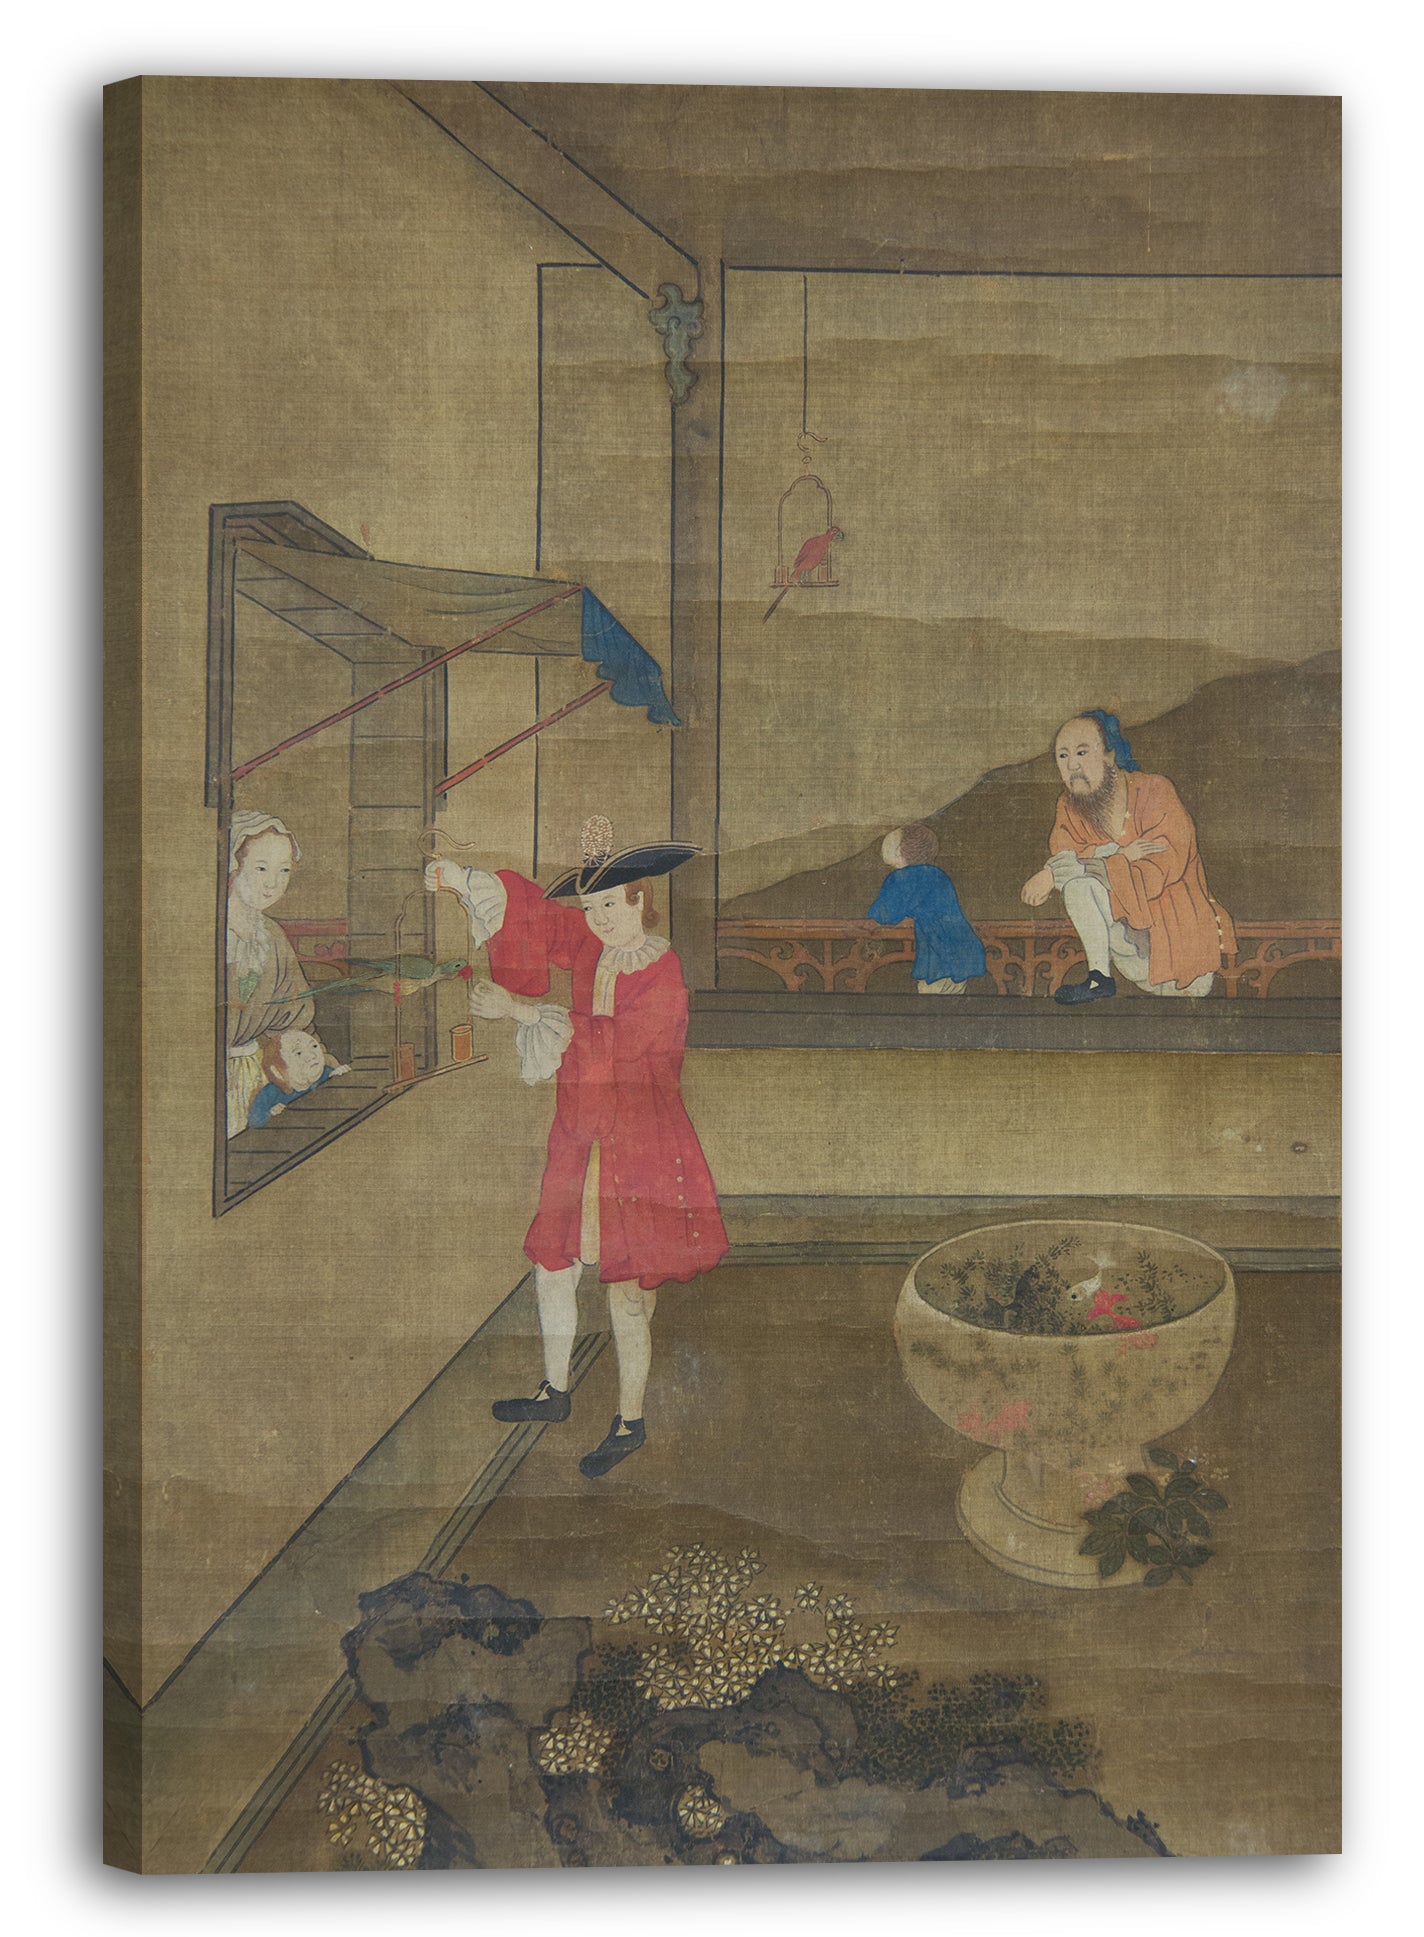 Leinwandbild Nicht identifizierter Künstler Chinese, 18. Jahrhundert - Europäisches Paar und Kind, die mit Papageien spielen